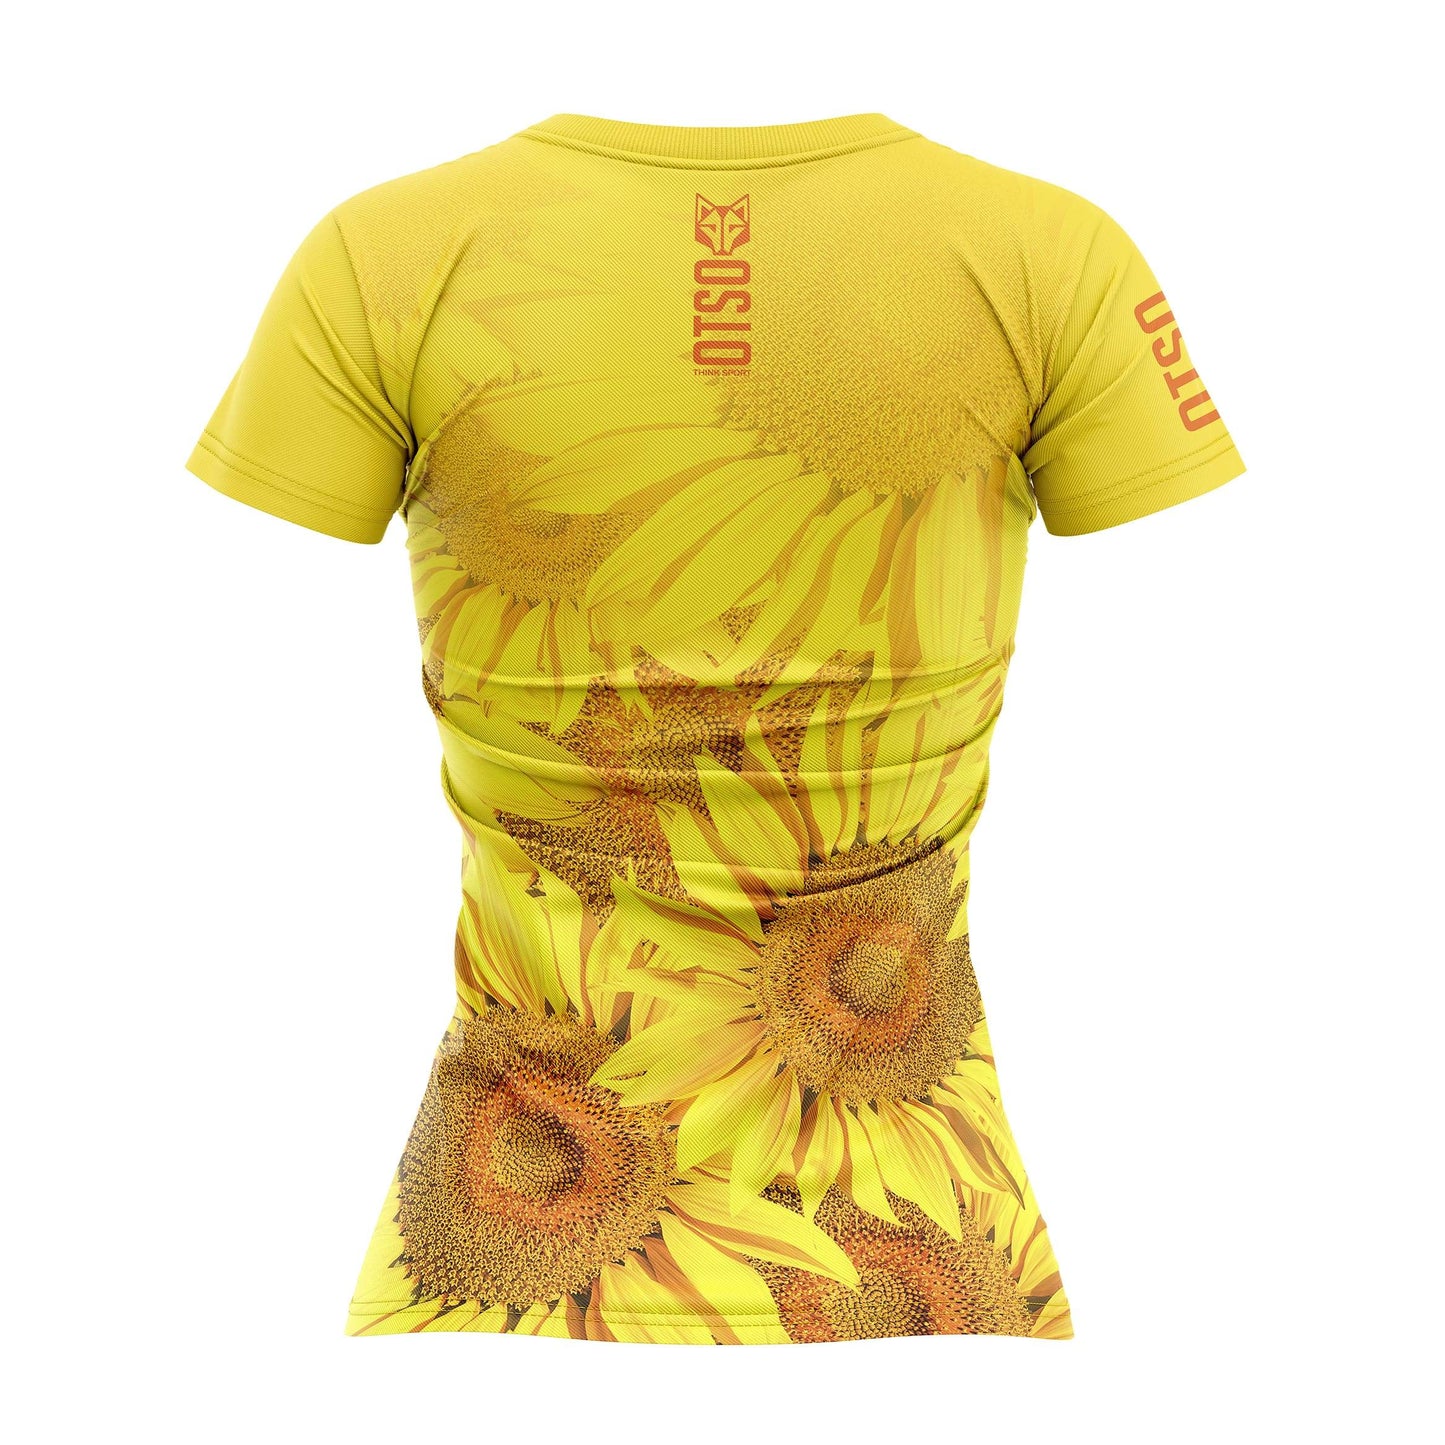 Camiseta Manga Corta Mujer Sunflower (Outlet)